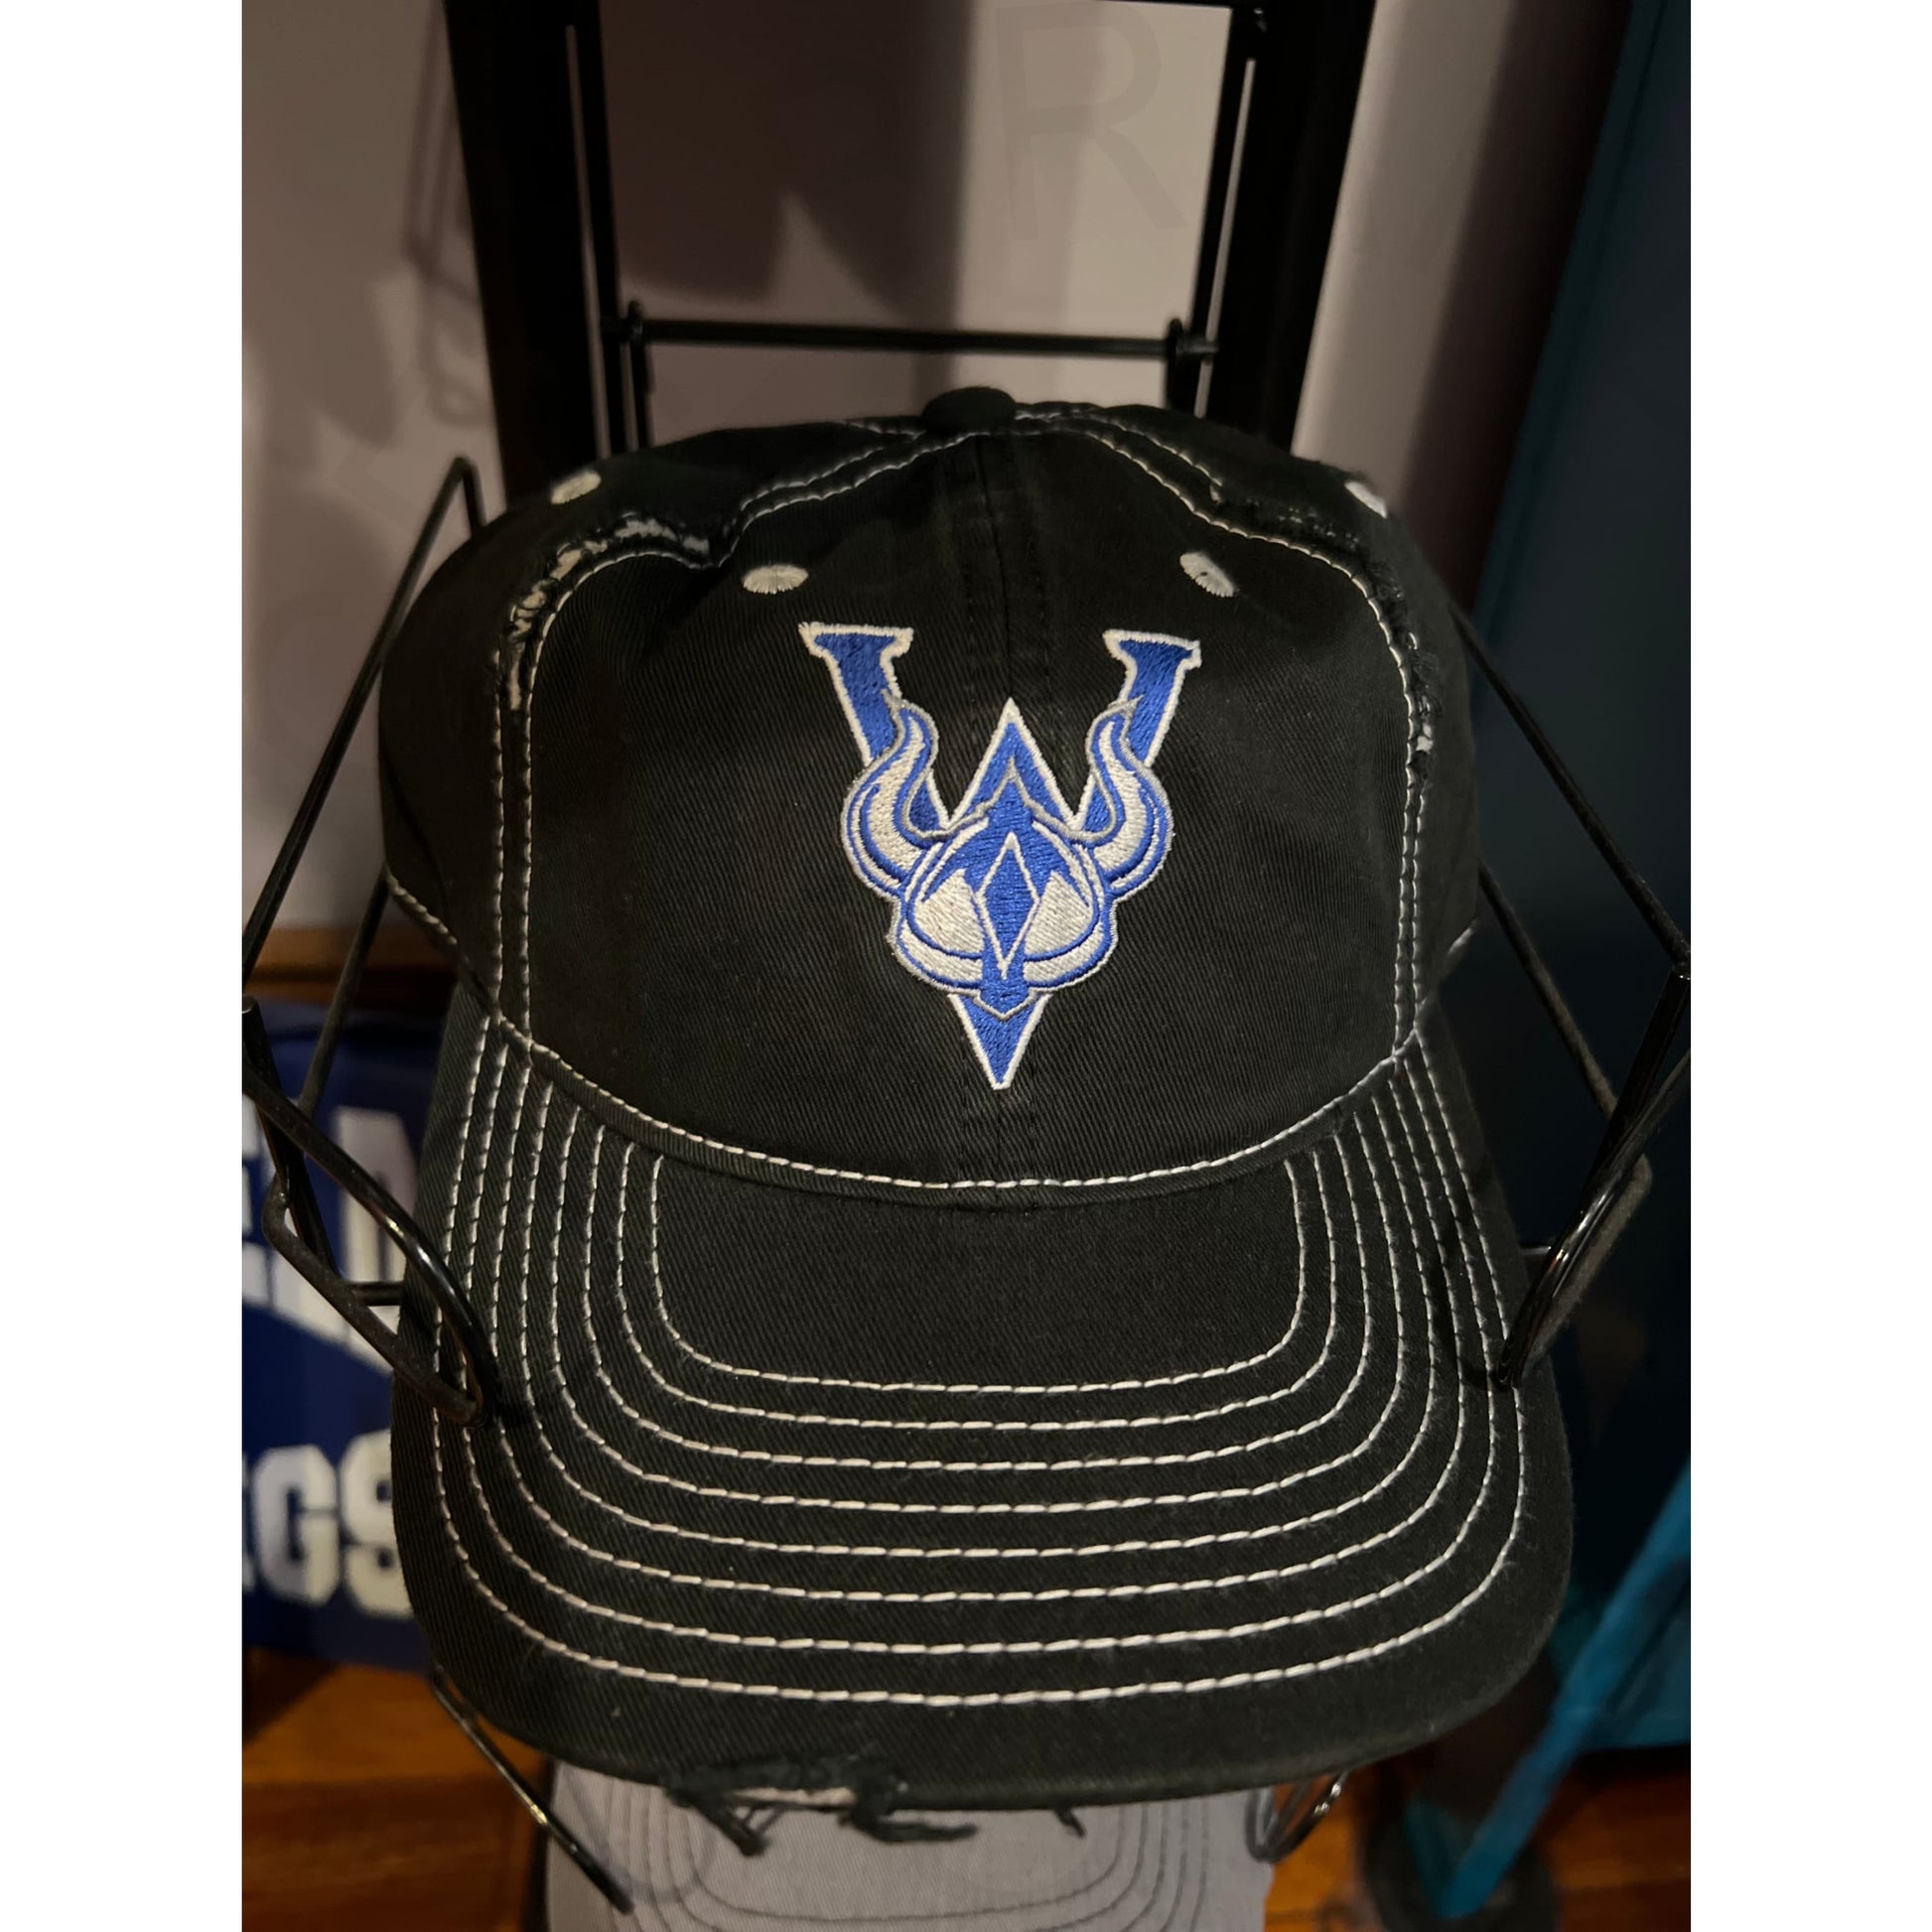 New! Winfield Vikings Richardson Hat